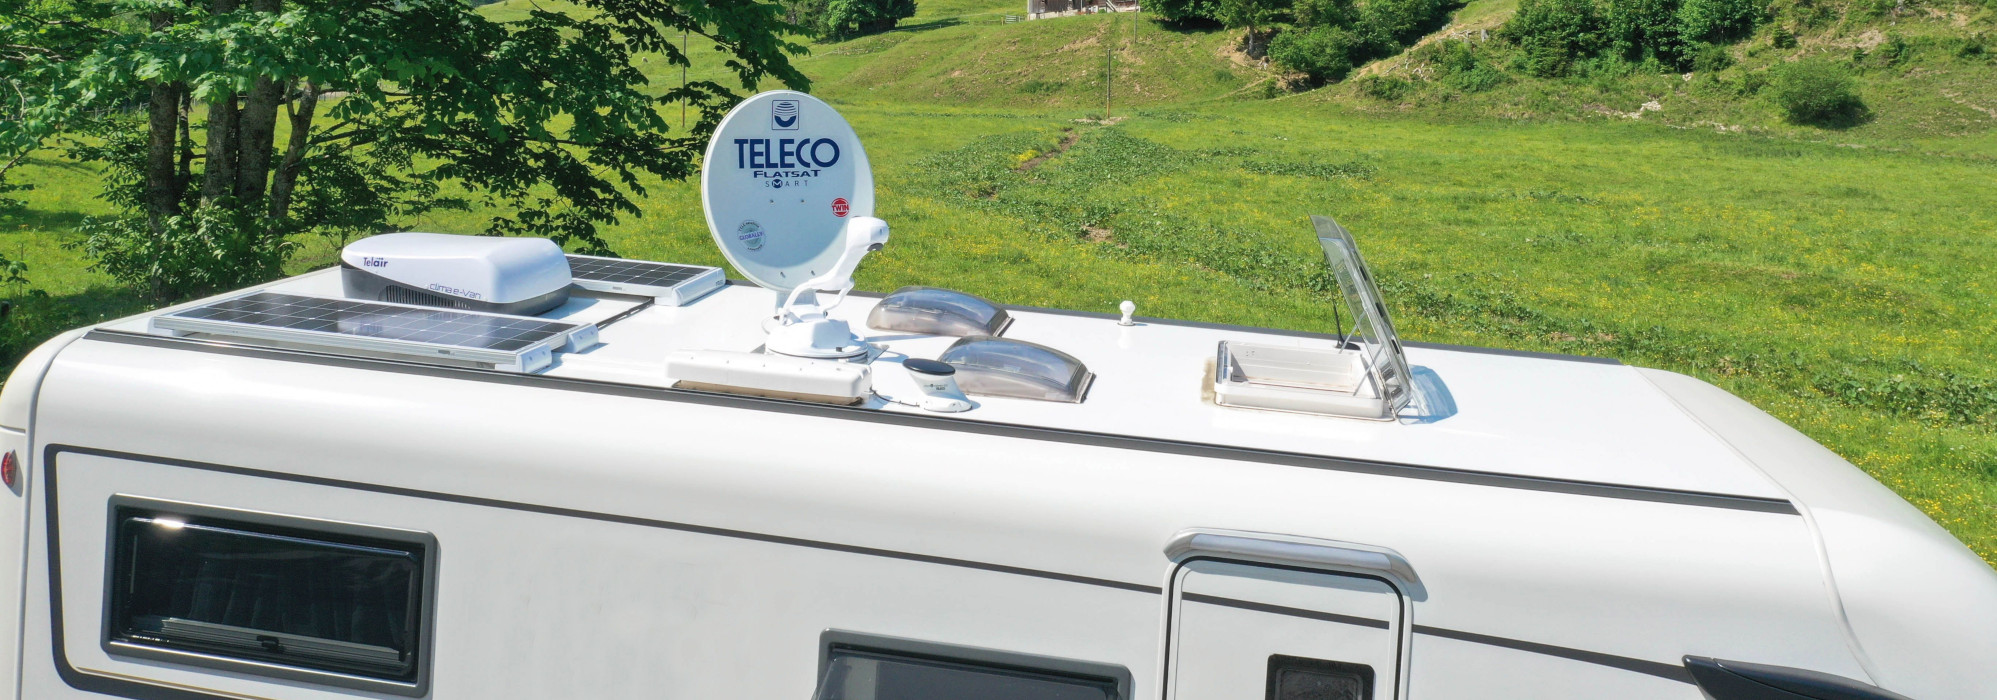 Teleco präsentiert ein neues starres 130-Watt-Photovoltaikmodul